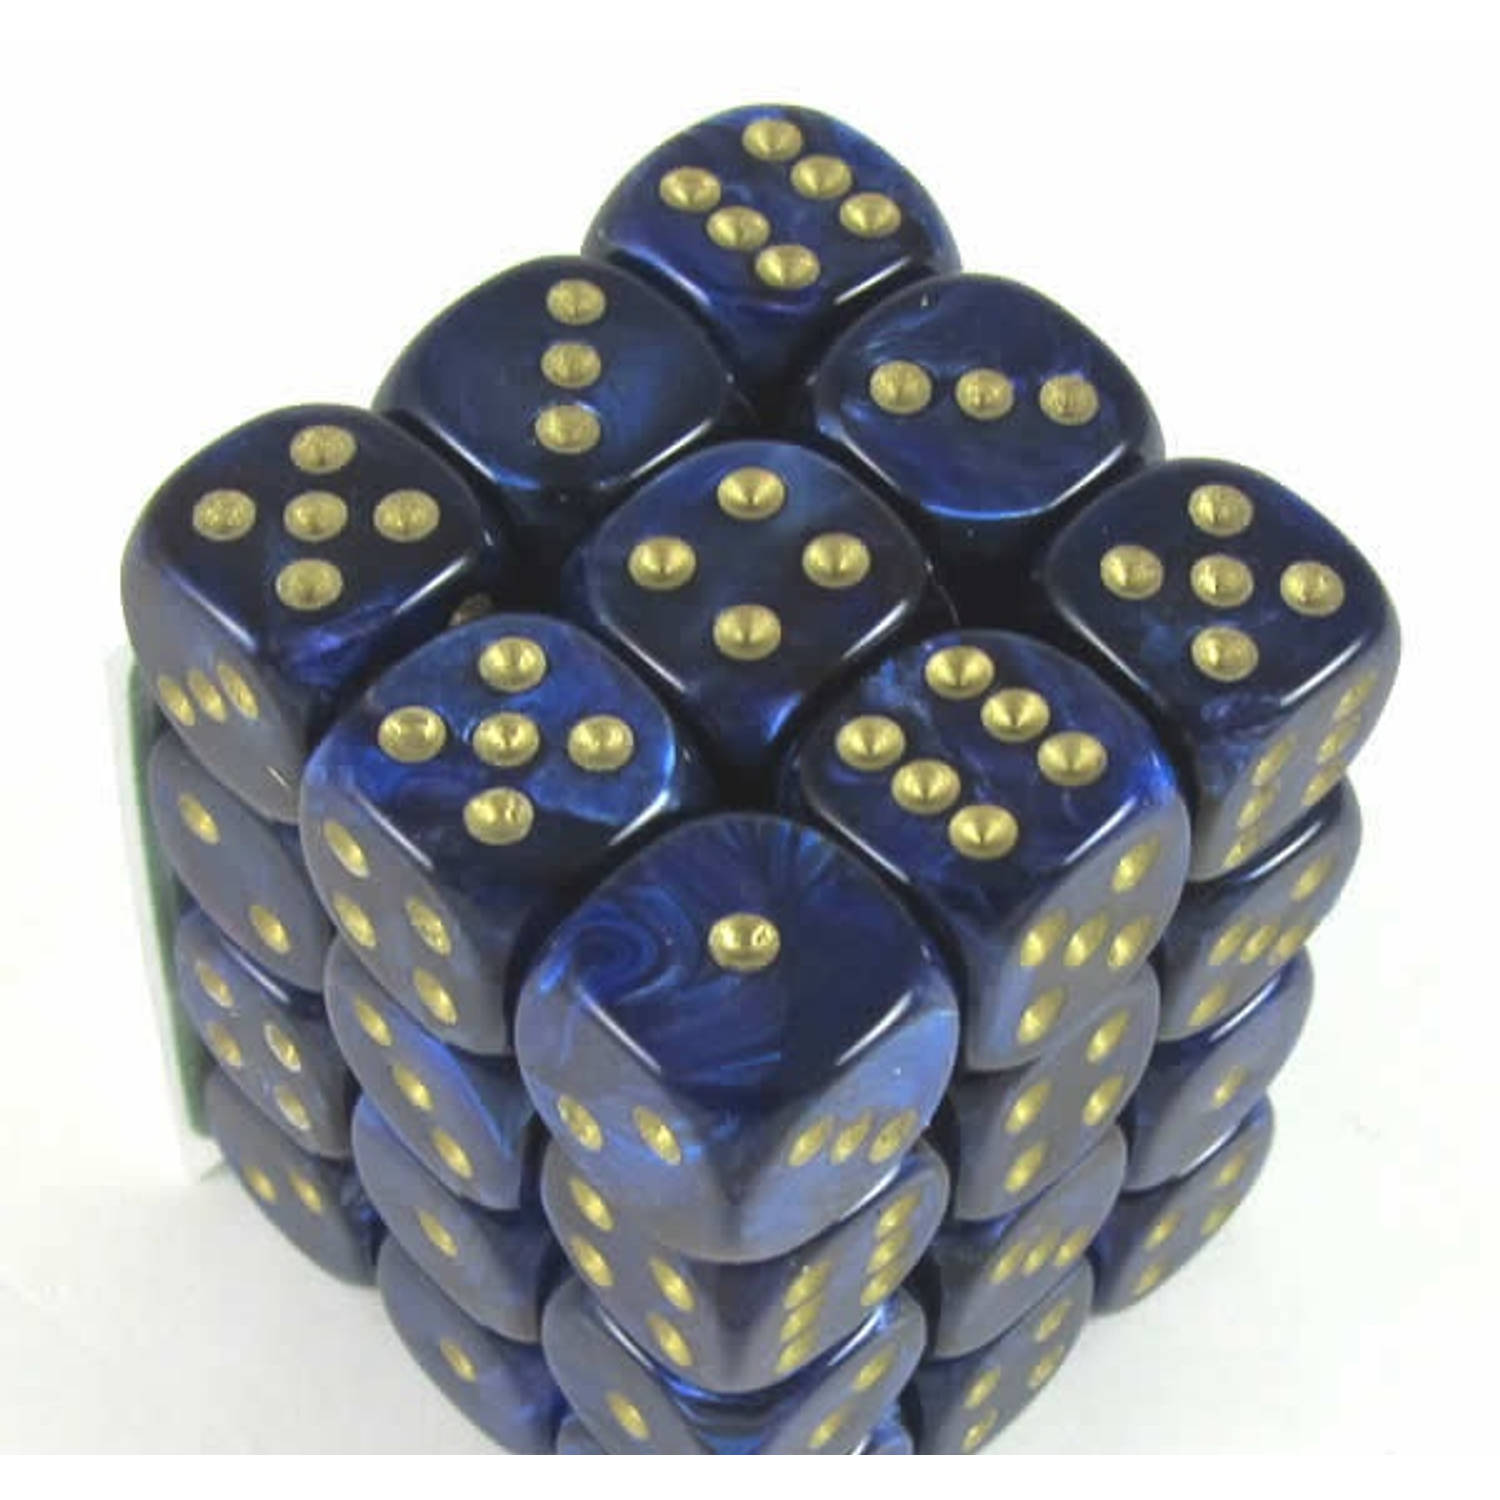 Chessex Scarab Royal Blue/gold D6 12mm Dobbelsteen Set (36 stuks)